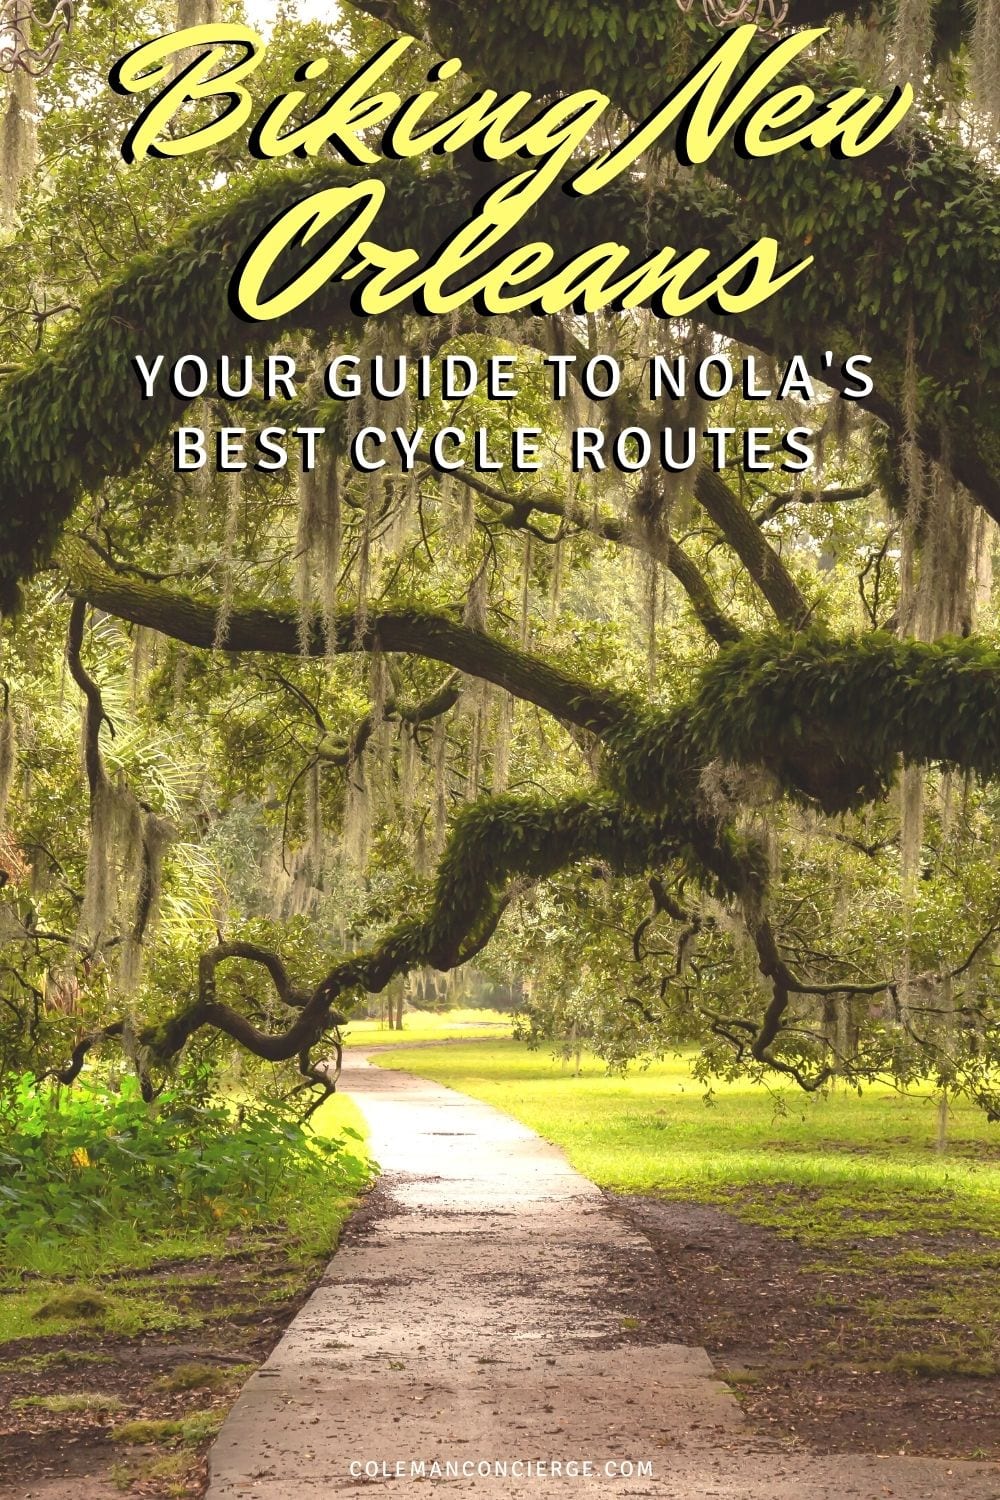 Bike trail under Oaks in New orleans